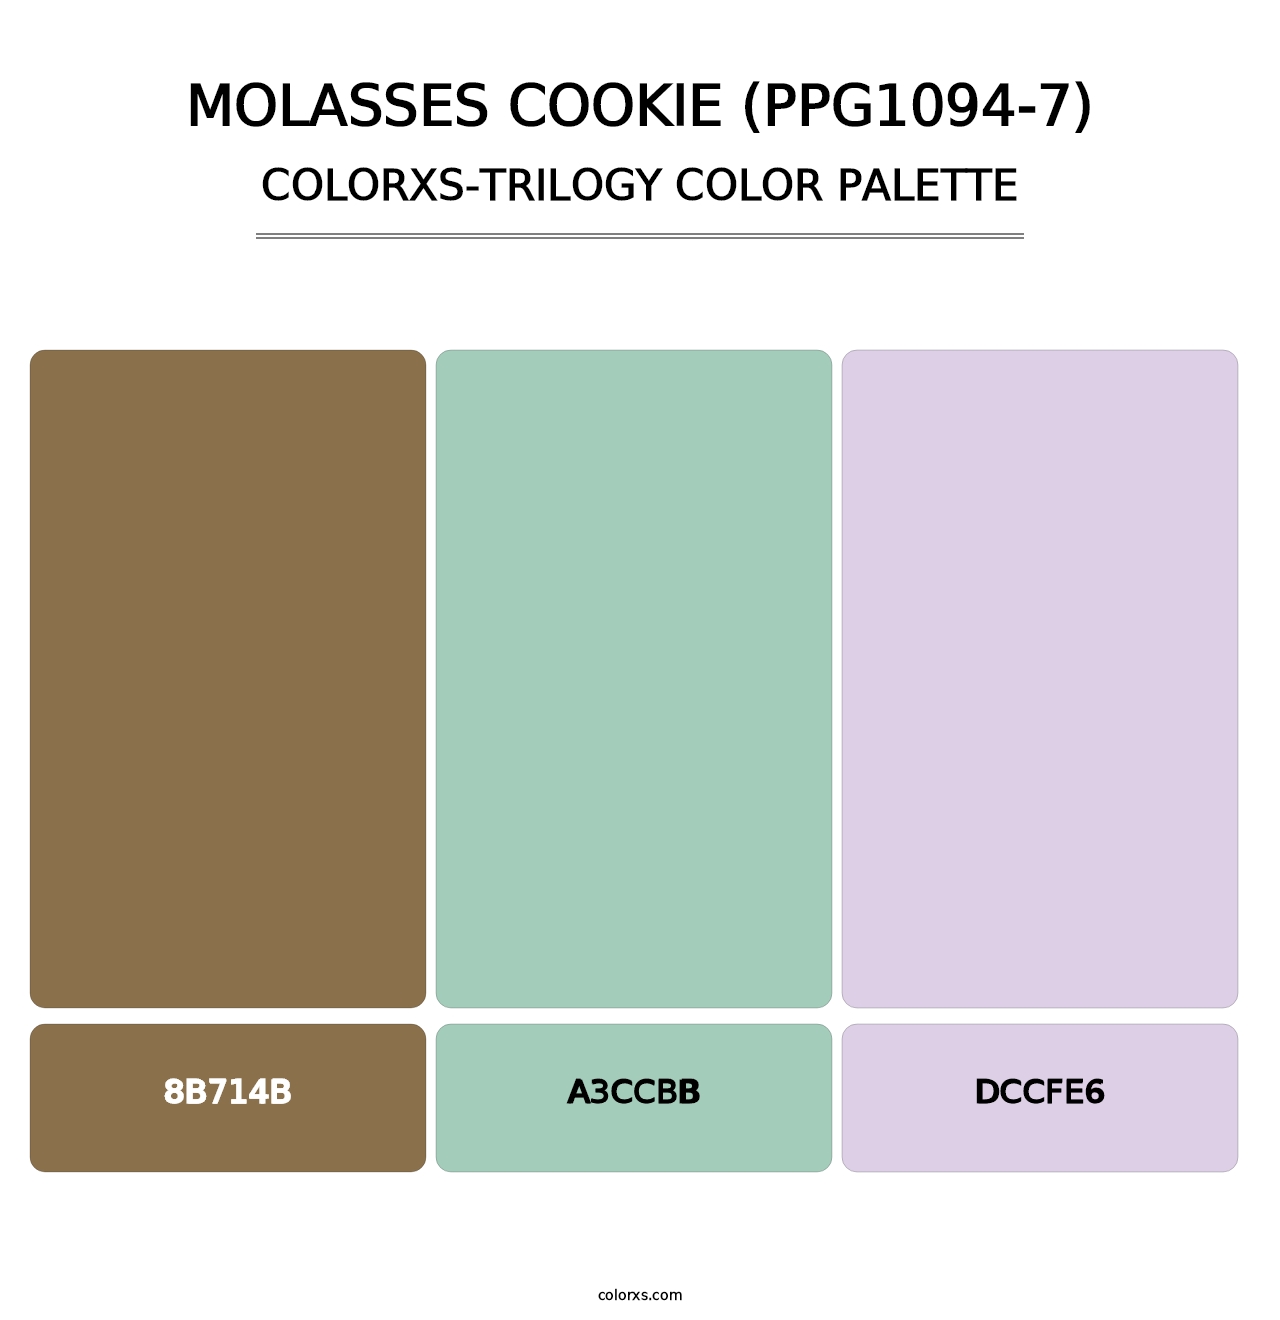 Molasses Cookie (PPG1094-7) - Colorxs Trilogy Palette